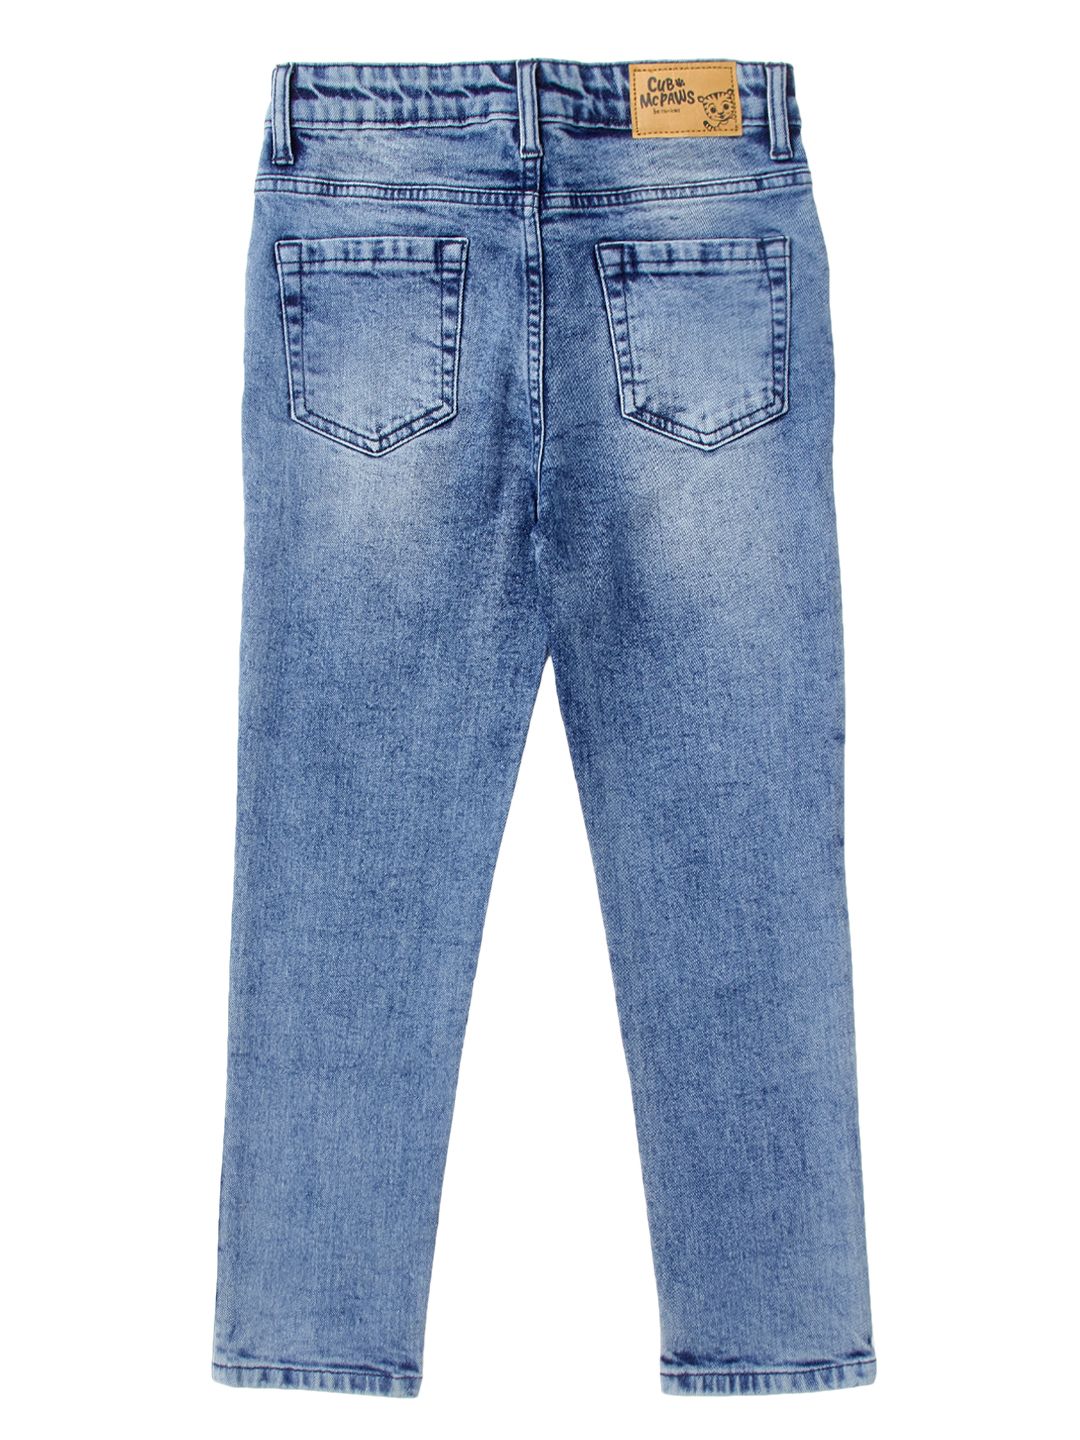 Buy Men Blue Light Wash Slim Tapered Jeans Online - 746327 | Peter England-donghotantheky.vn